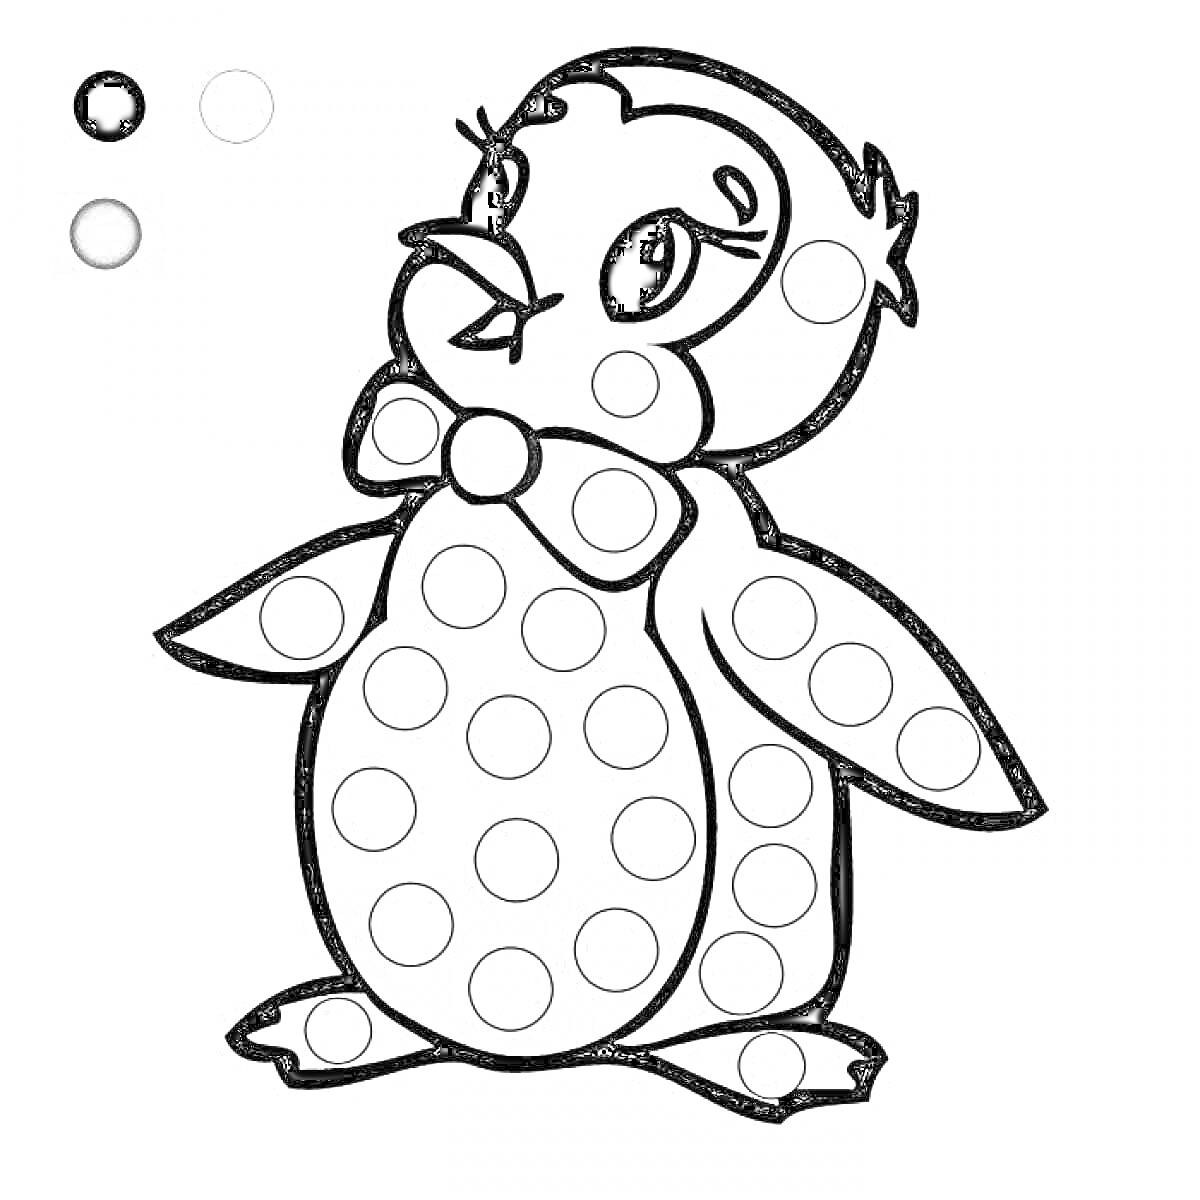 Пингвин с бабочкой и кружками для пальчикового раскрашивания